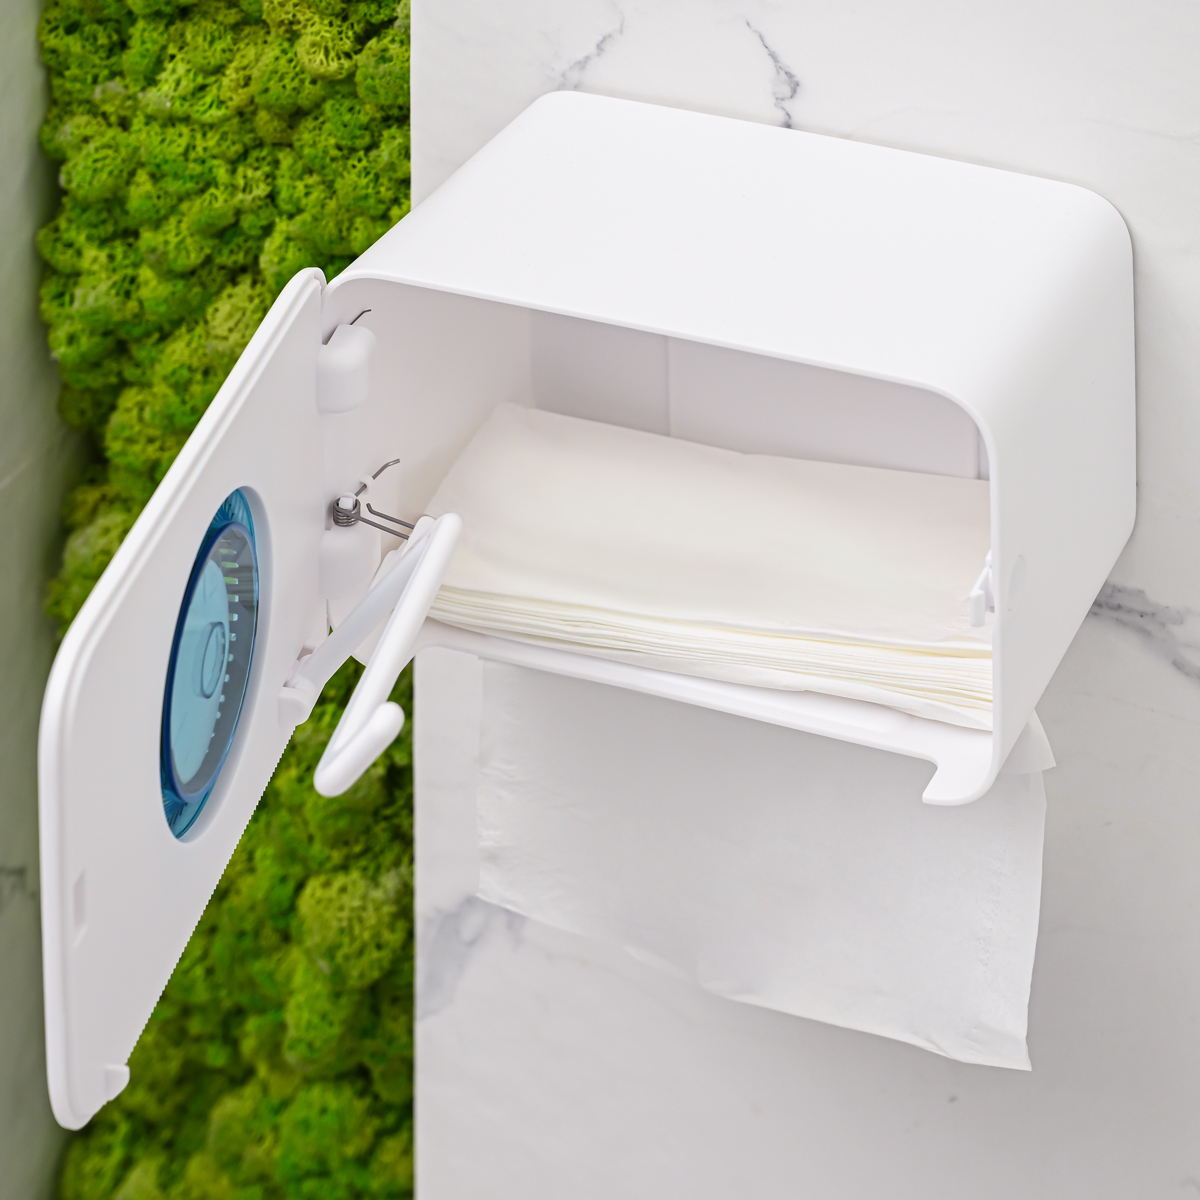 Тримач для туалетного паперу МВМ My Home з отвором для аромасаше 220x149x142 мм (BP-41 WHITE/GRAY) - фото 11